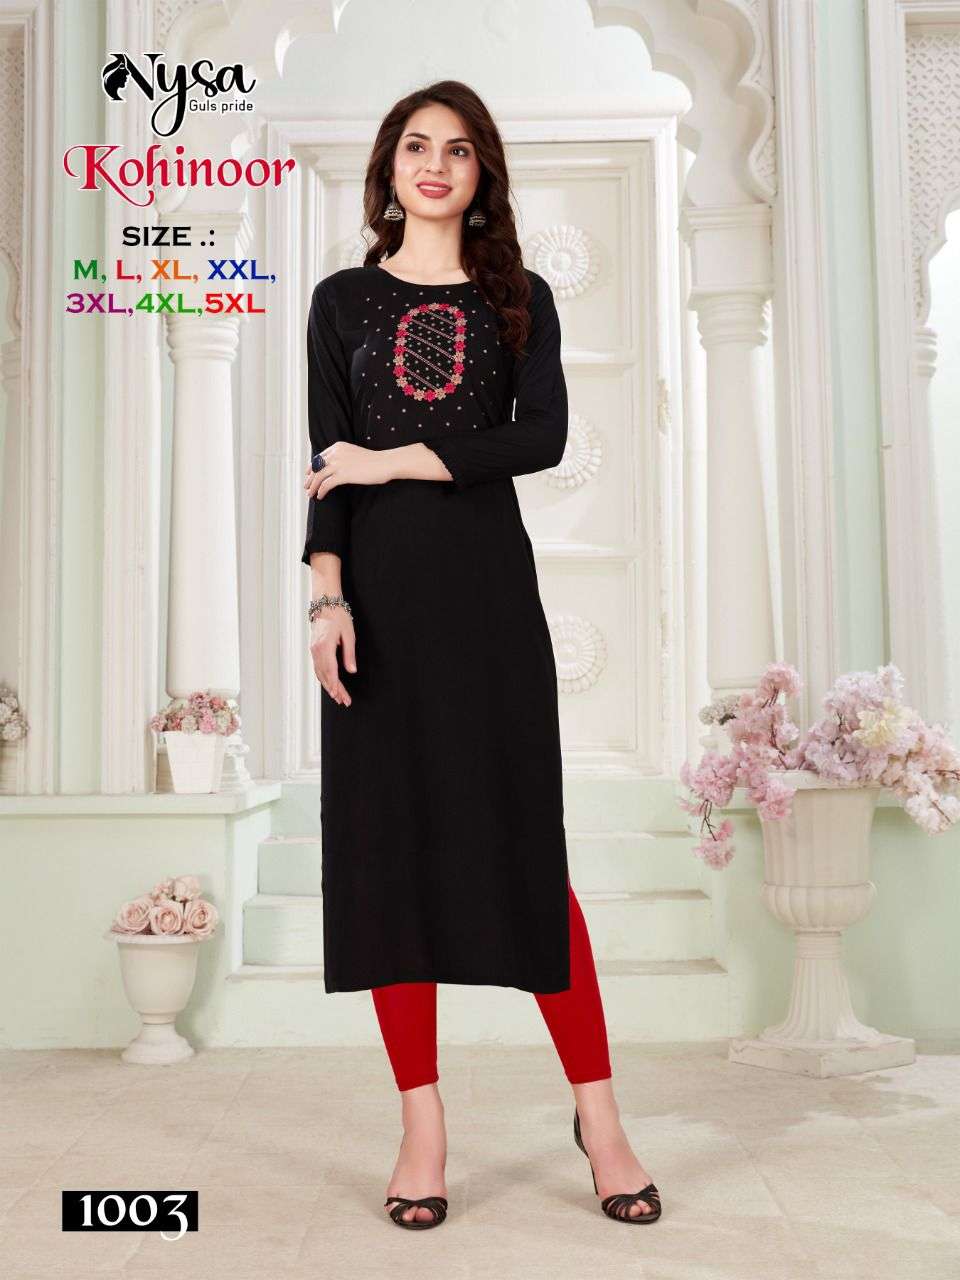 nysa kohinoor 1001-1008 series reyon embroidred designer kurti catalogue wholesaler surat 